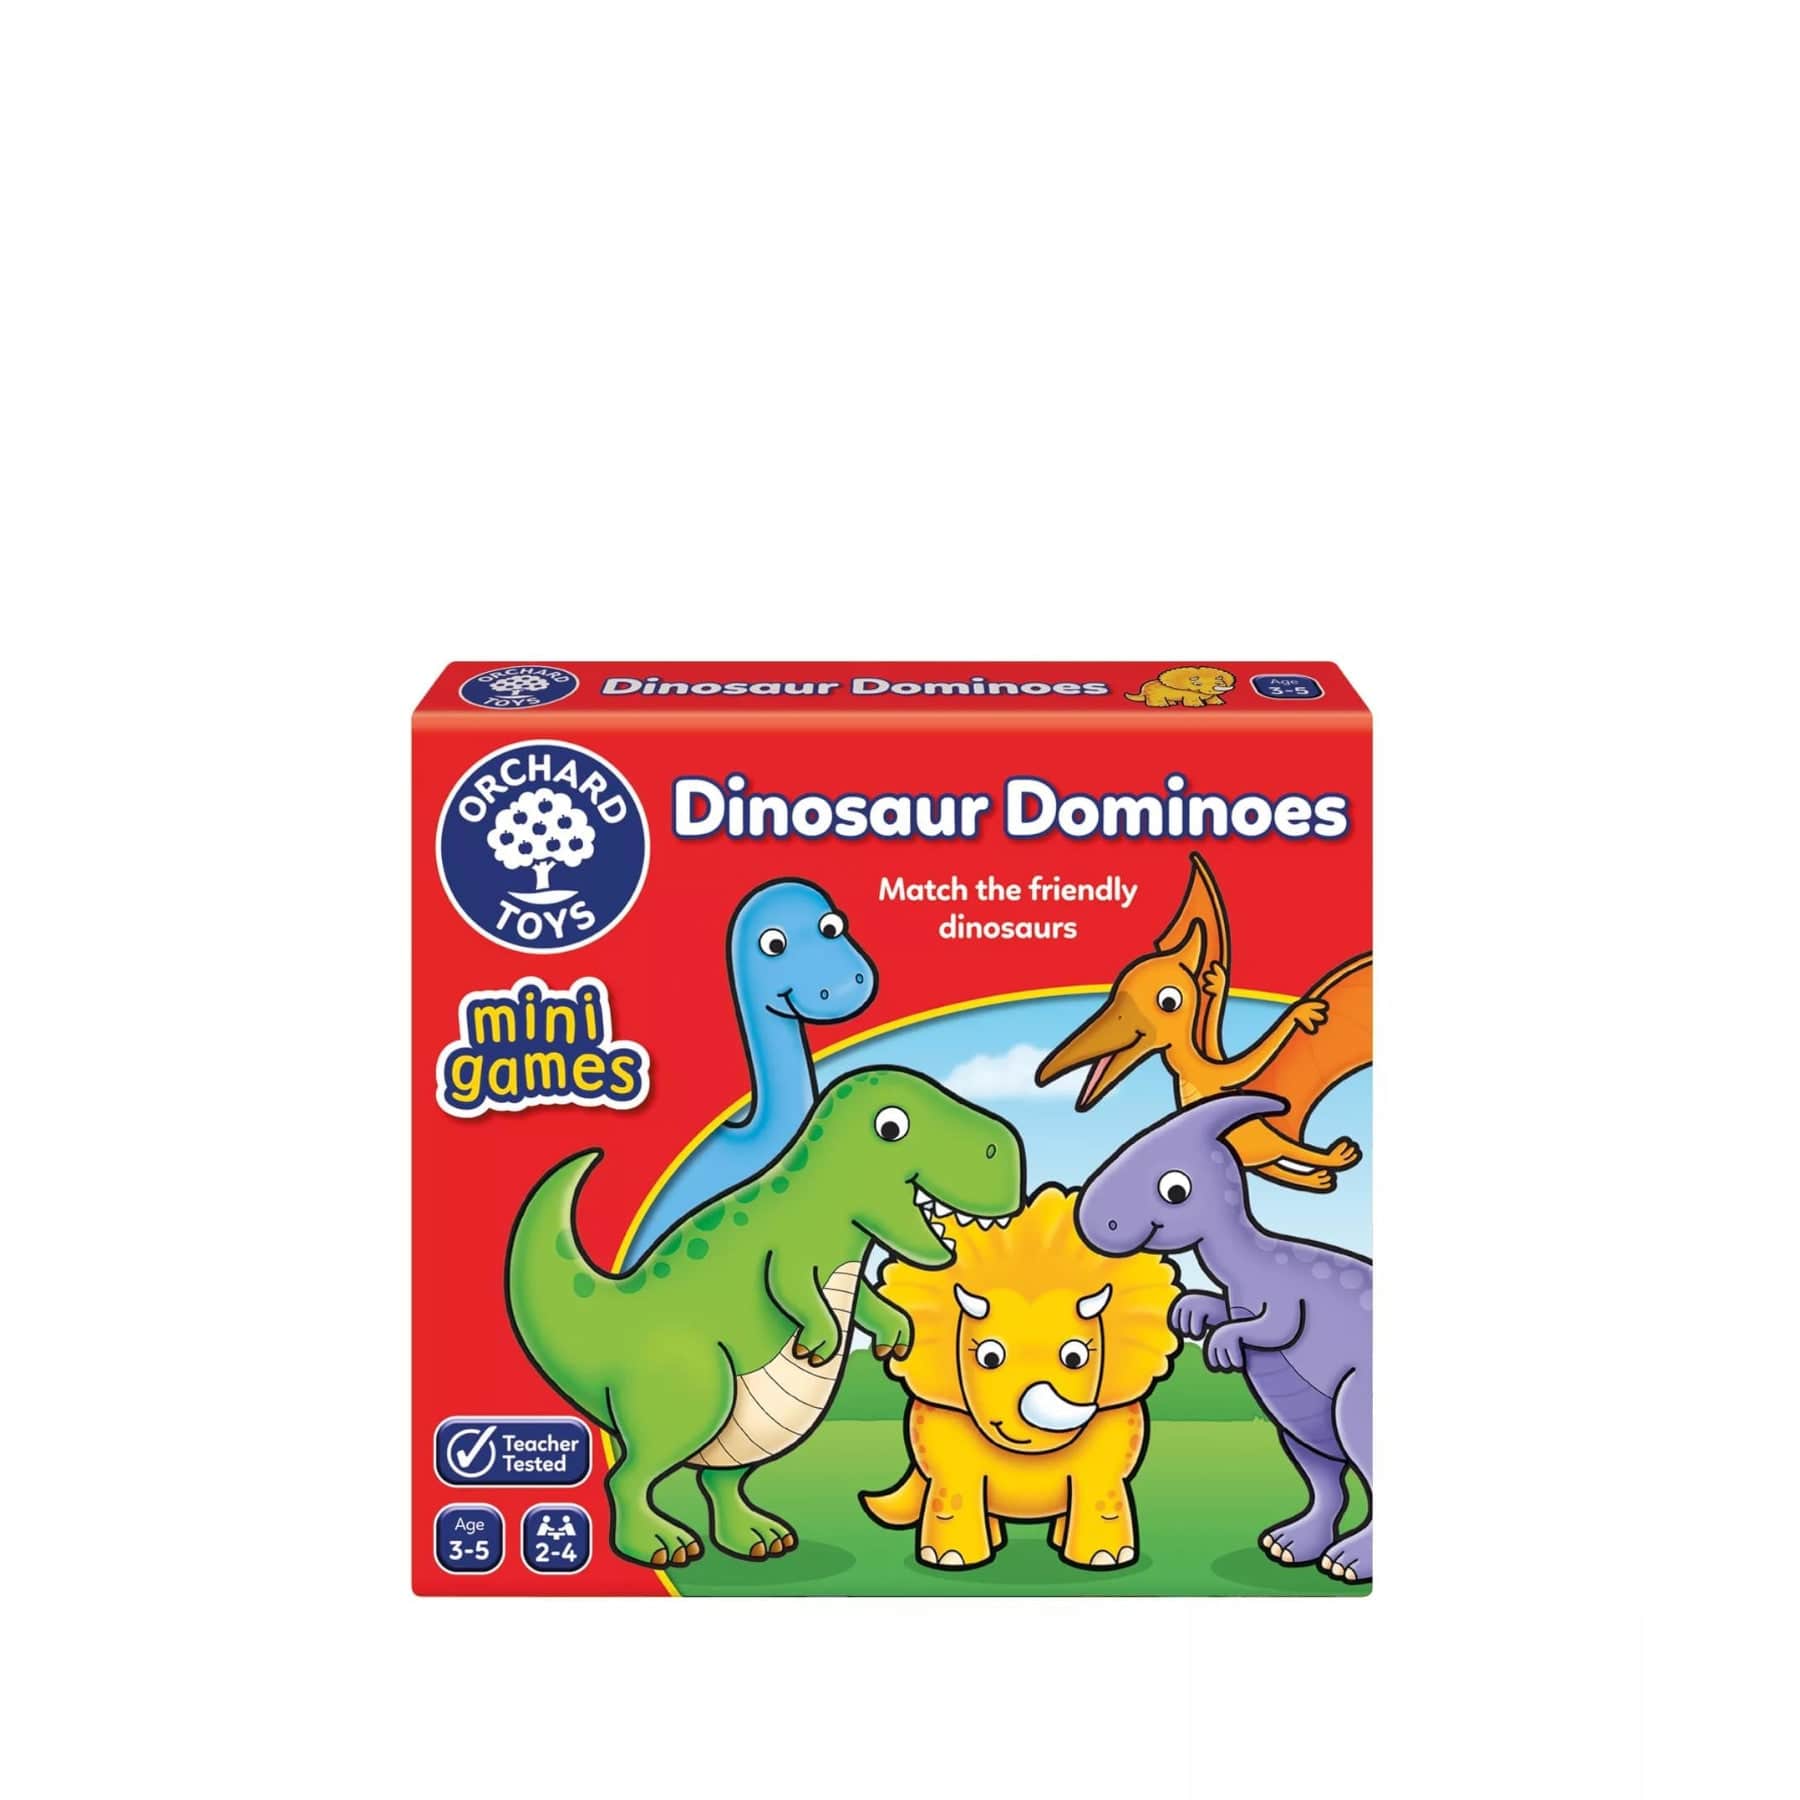 Dinosaur dominoes mini game